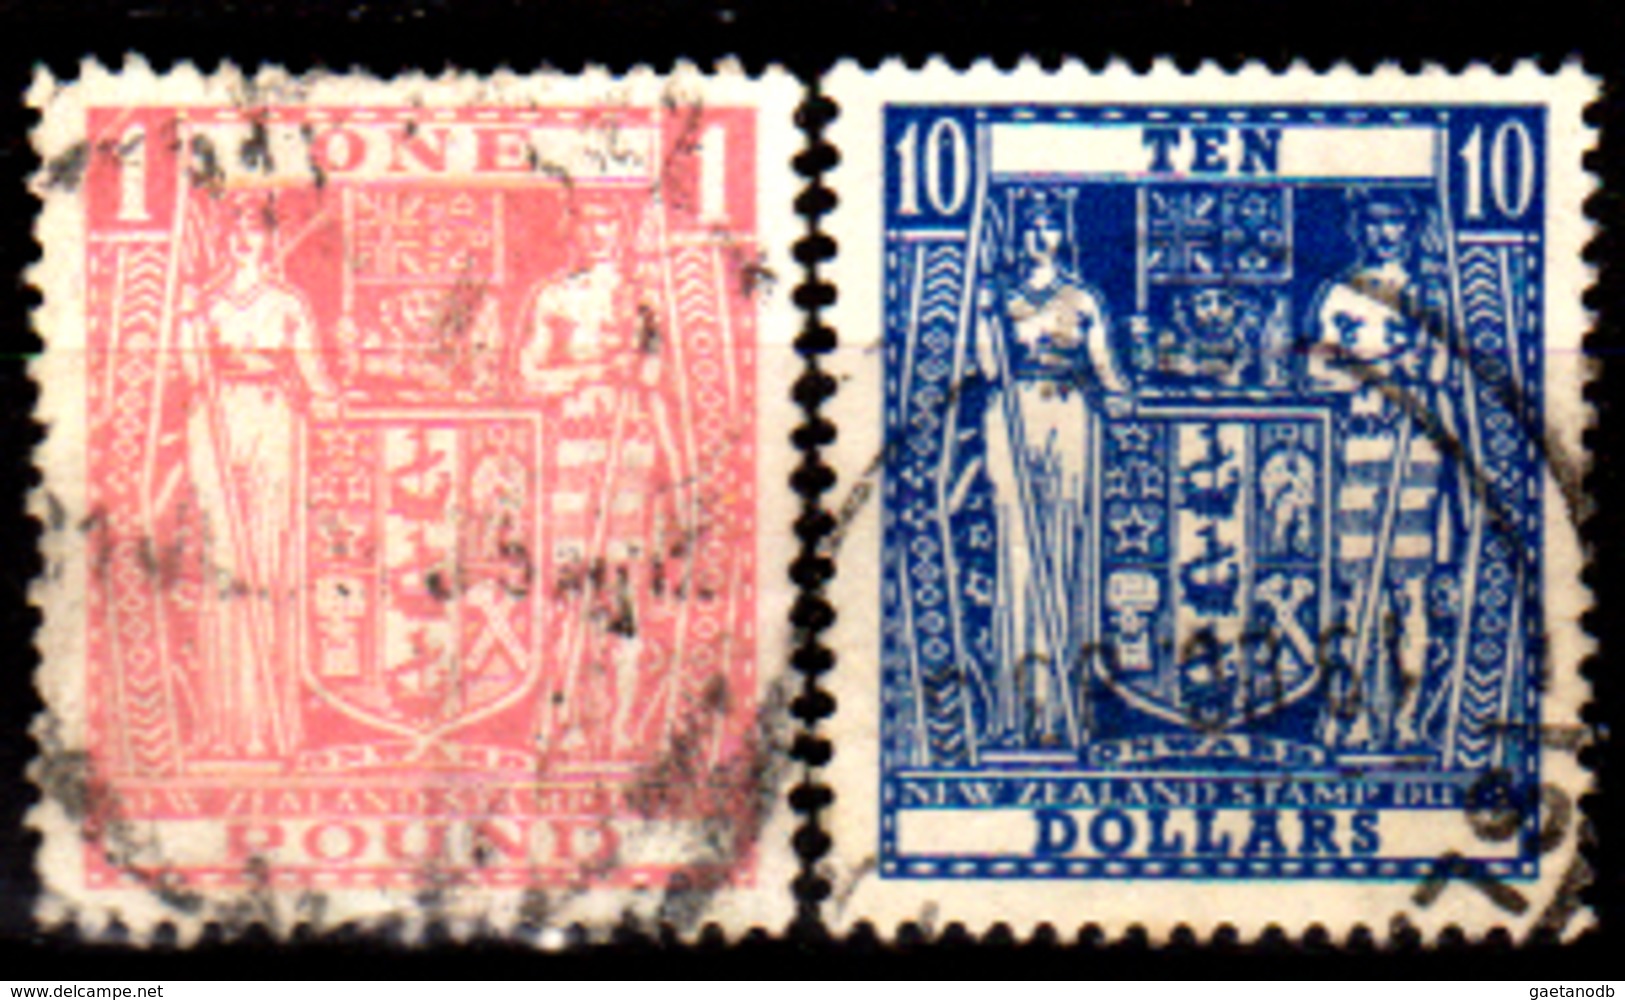 Nuova-Zelanda-0087 - Fiscali Postali 1931-86 (o) Used - Senza Difetti Occulti. - Fiscali-postali